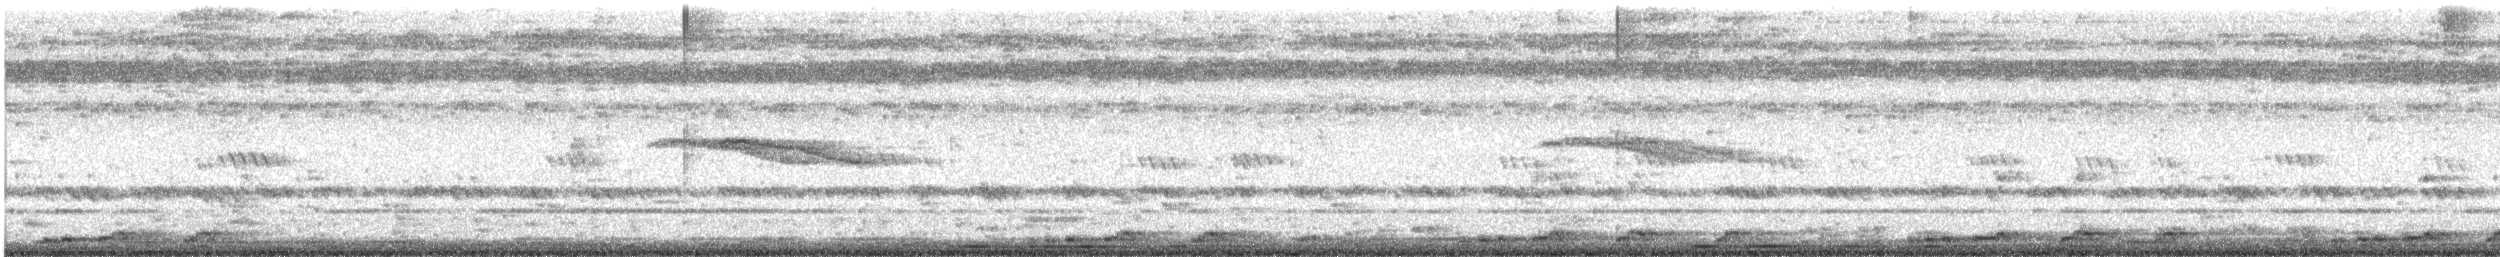 Ak Göğüslü Suyelvesi - ML482524521